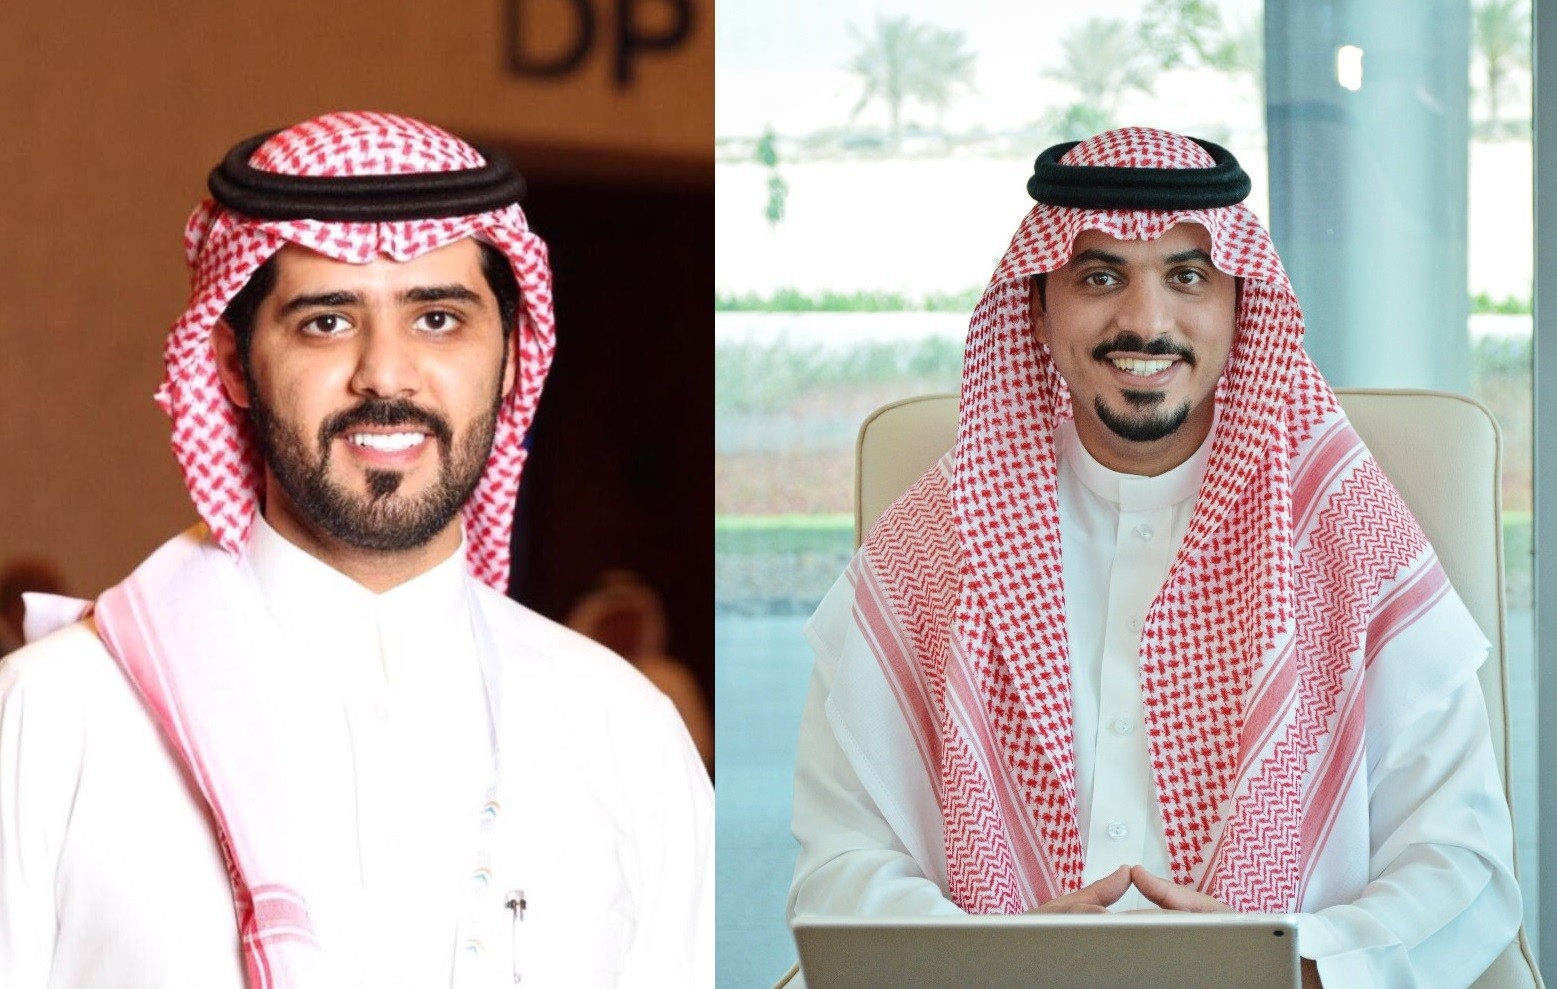 سعوديون: المملكة والإمارات نموذج للتضامن الحقيقي